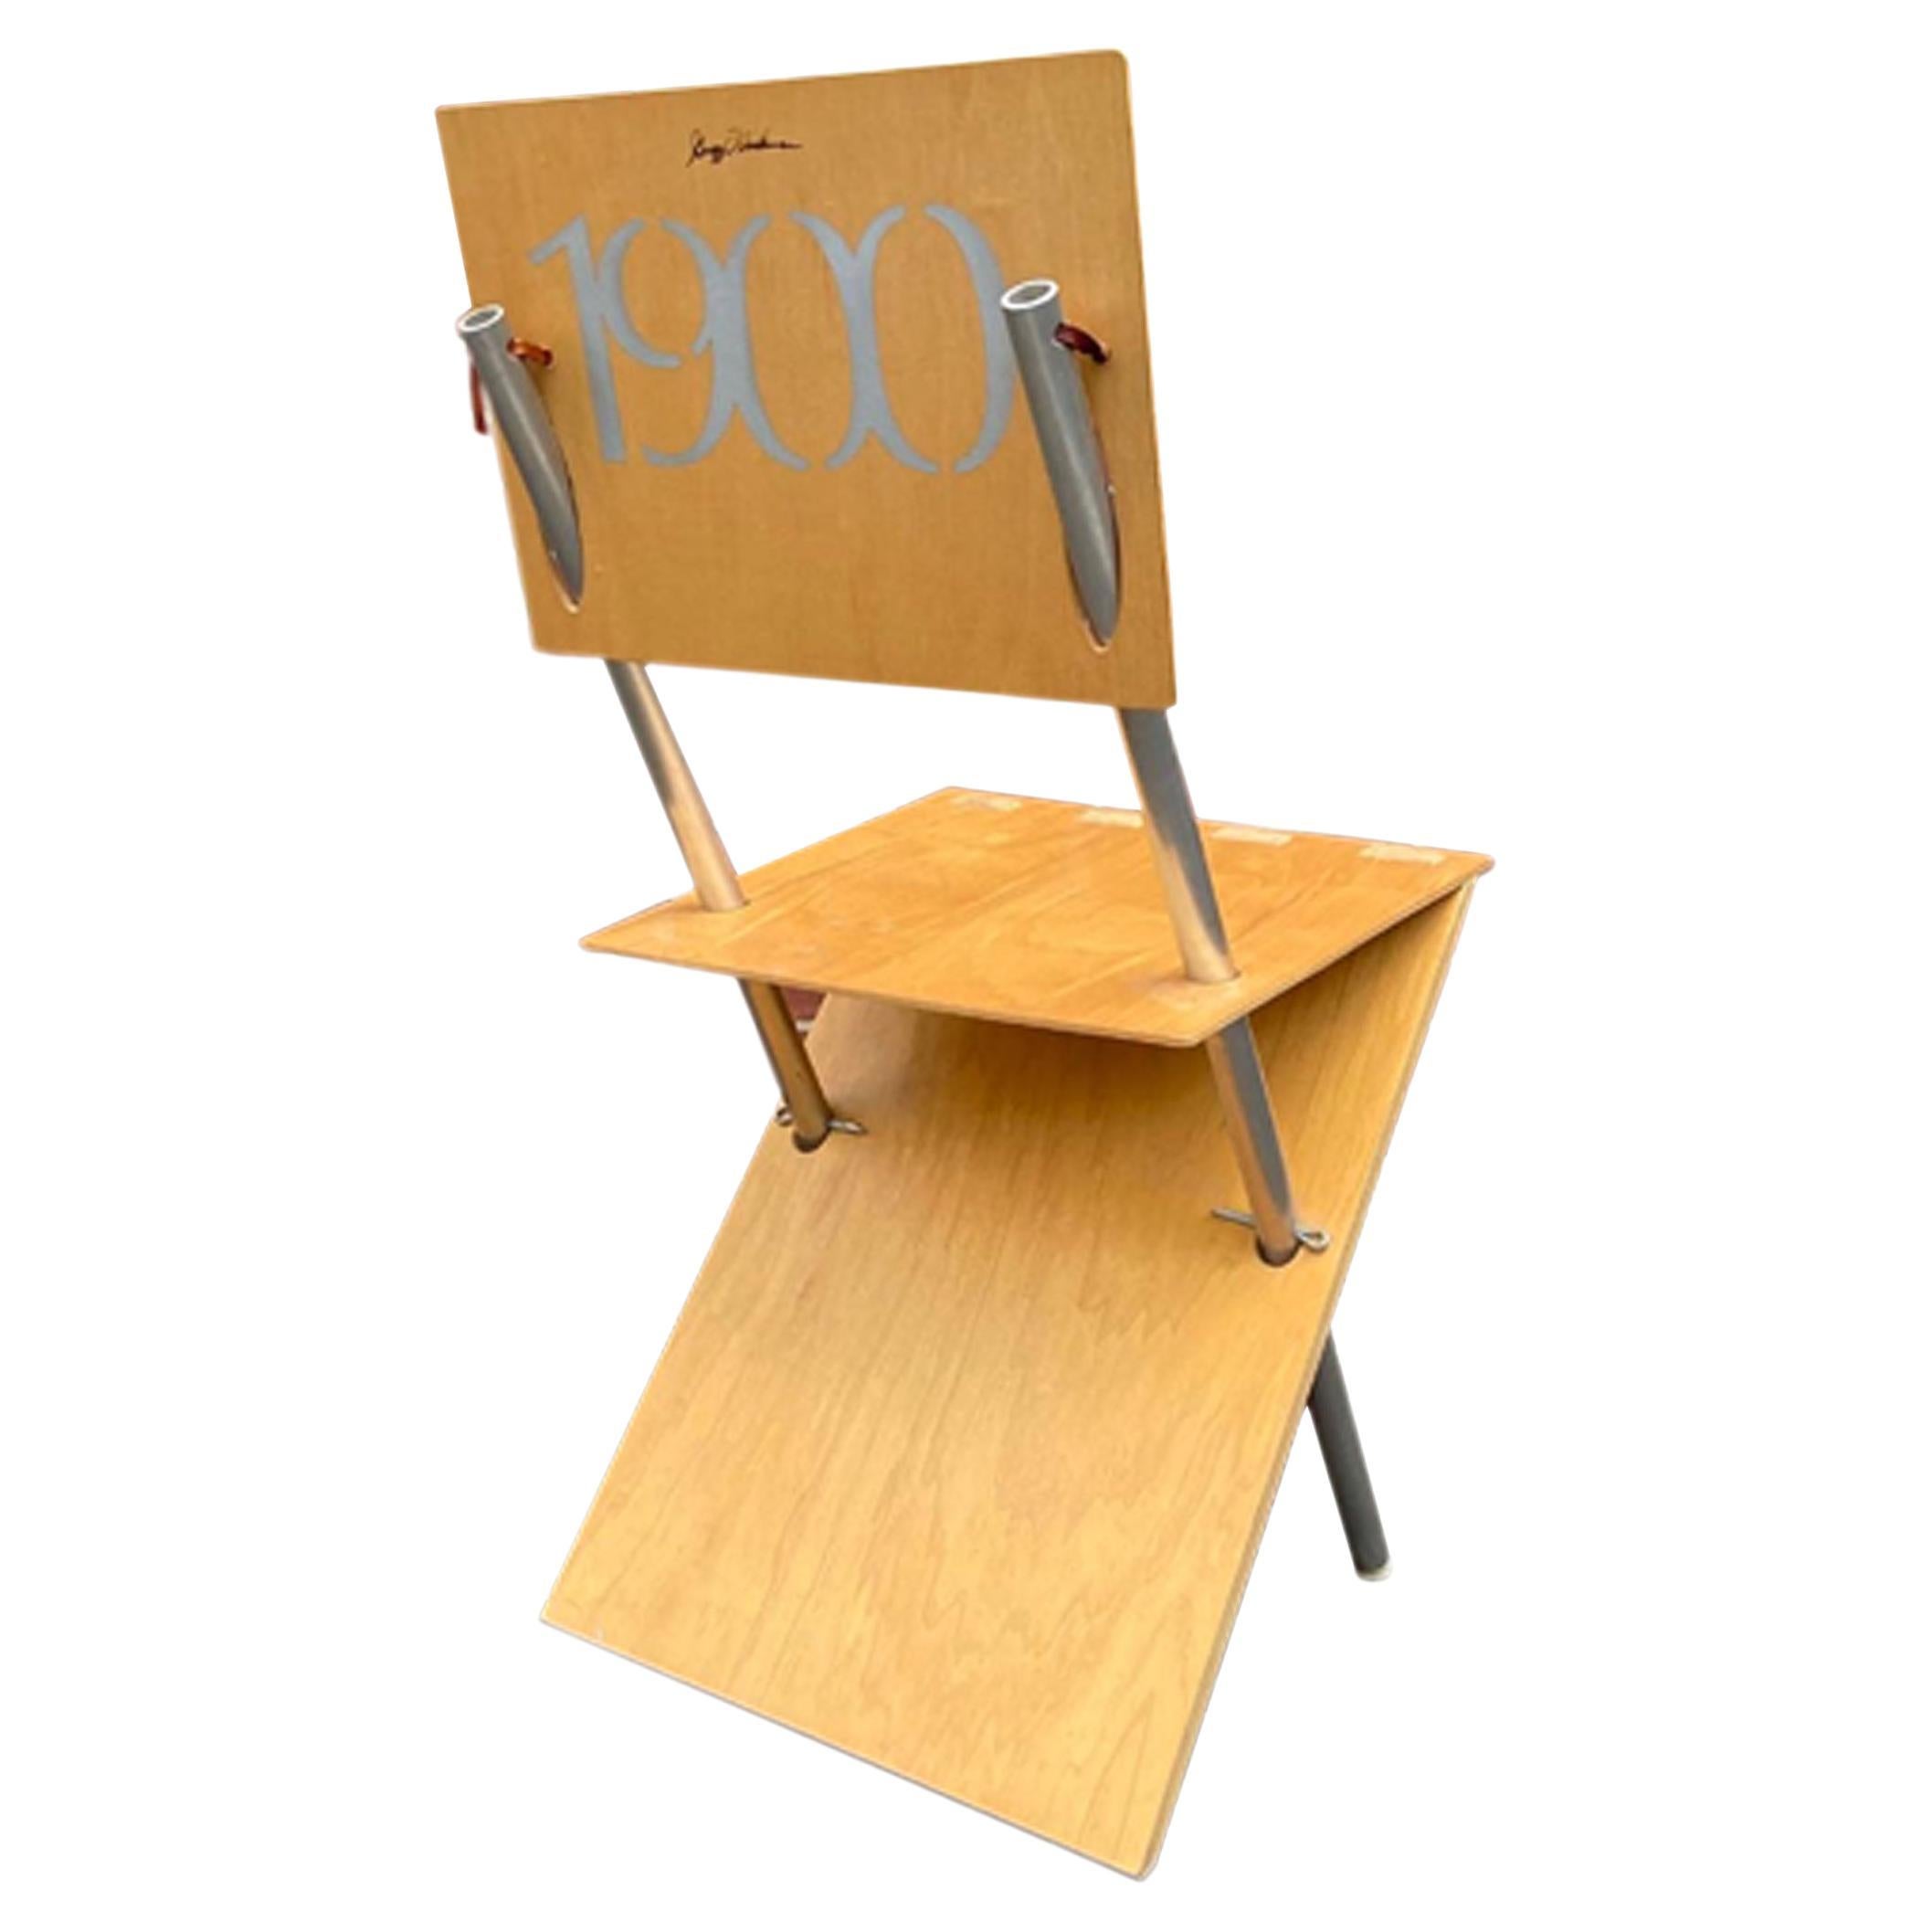 Chaise postmoderne en bois et métal des années 1990, conçue par l'architecte américain Gregg Fleishman. Cette chaise au design artistique est composée de trois panneaux de contreplaqué de bouleau européen qui sont percés et soutenus par deux tiges